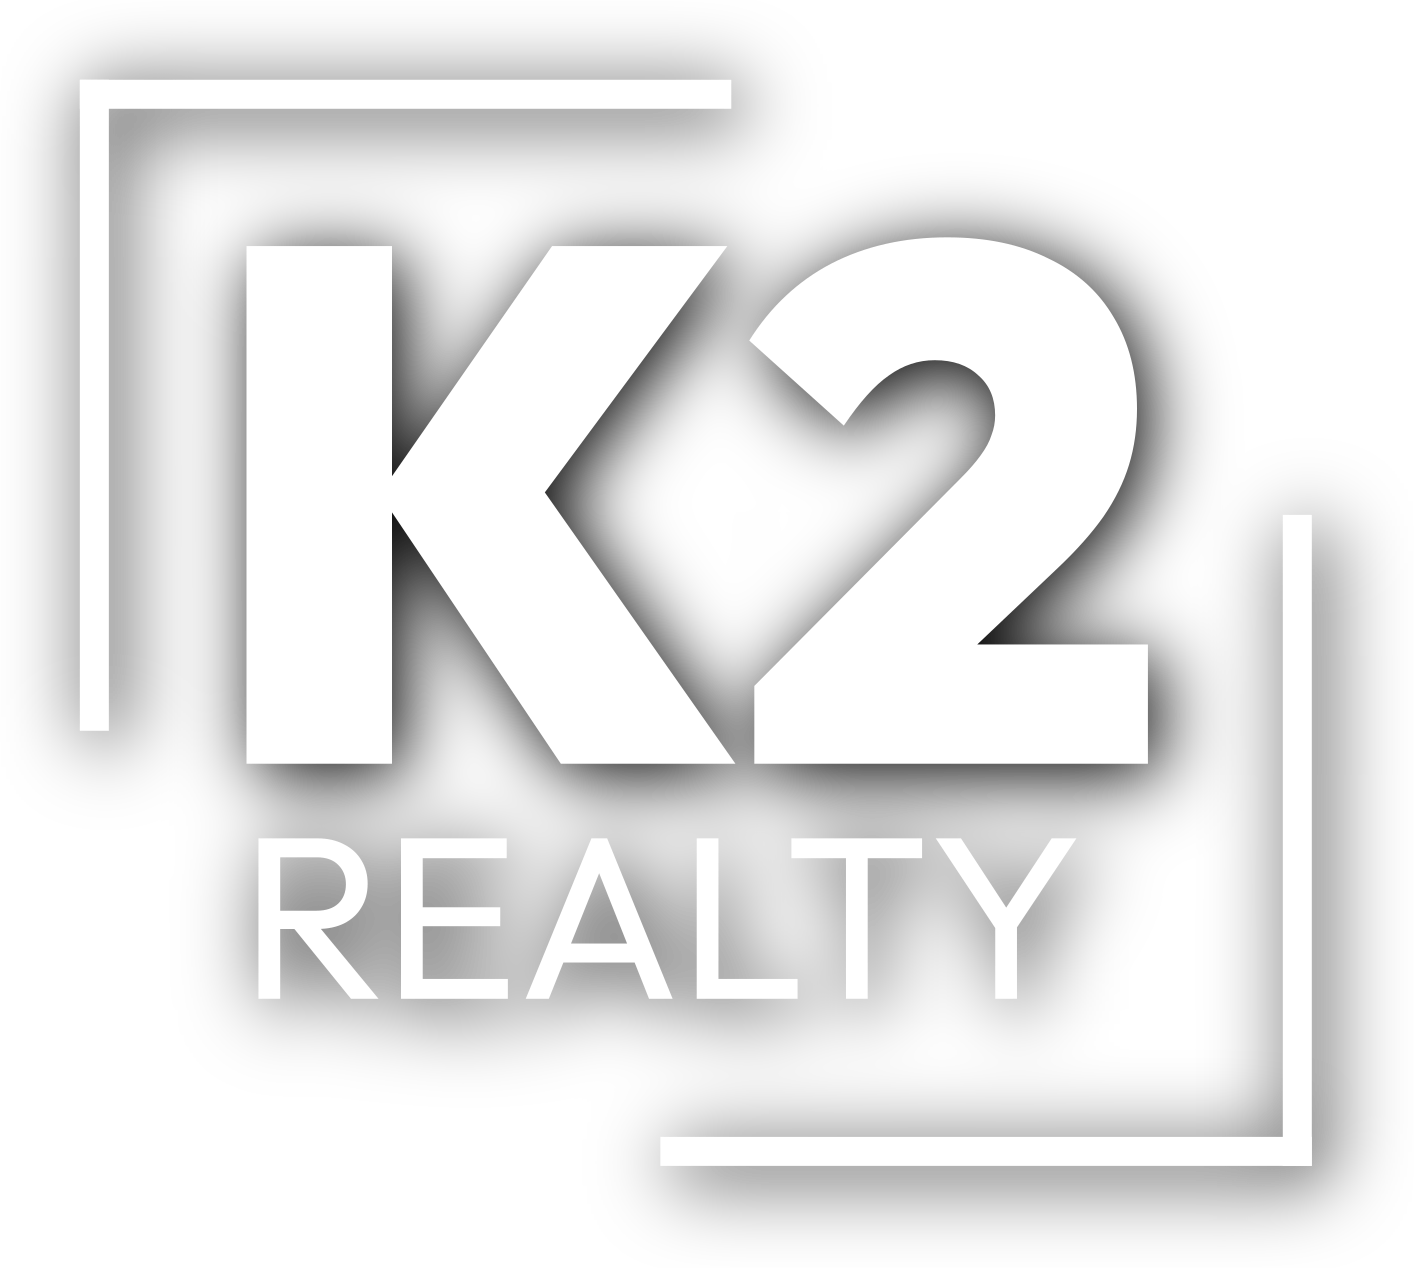 K2 Realty logo